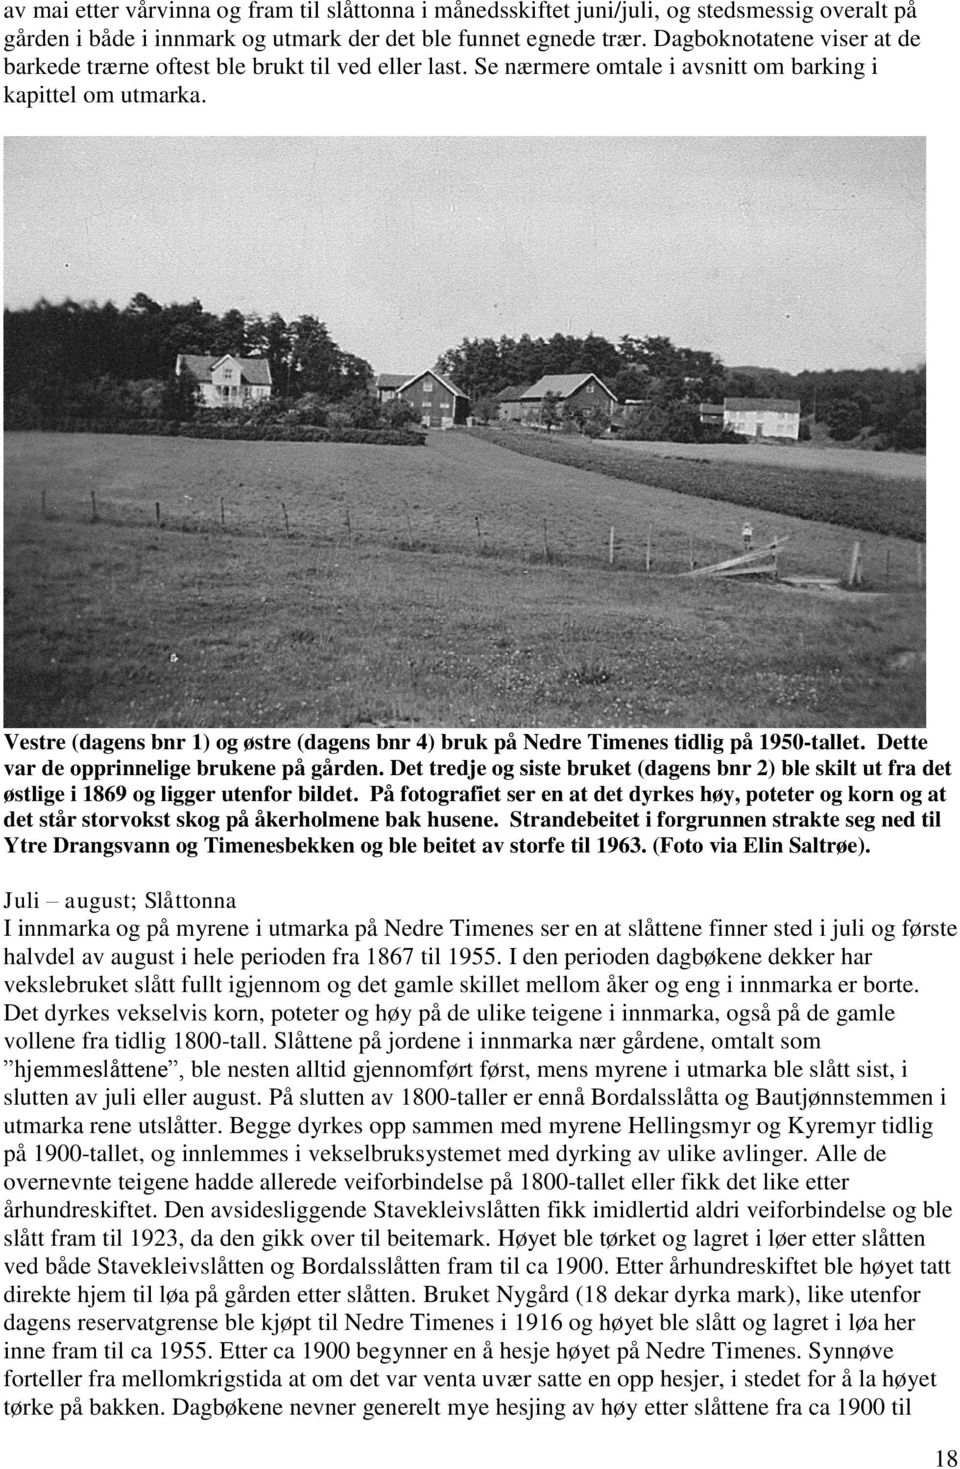 Vestre (dagens bnr 1) og østre (dagens bnr 4) bruk på Nedre Timenes tidlig på 1950-tallet. Dette var de opprinnelige brukene på gården.